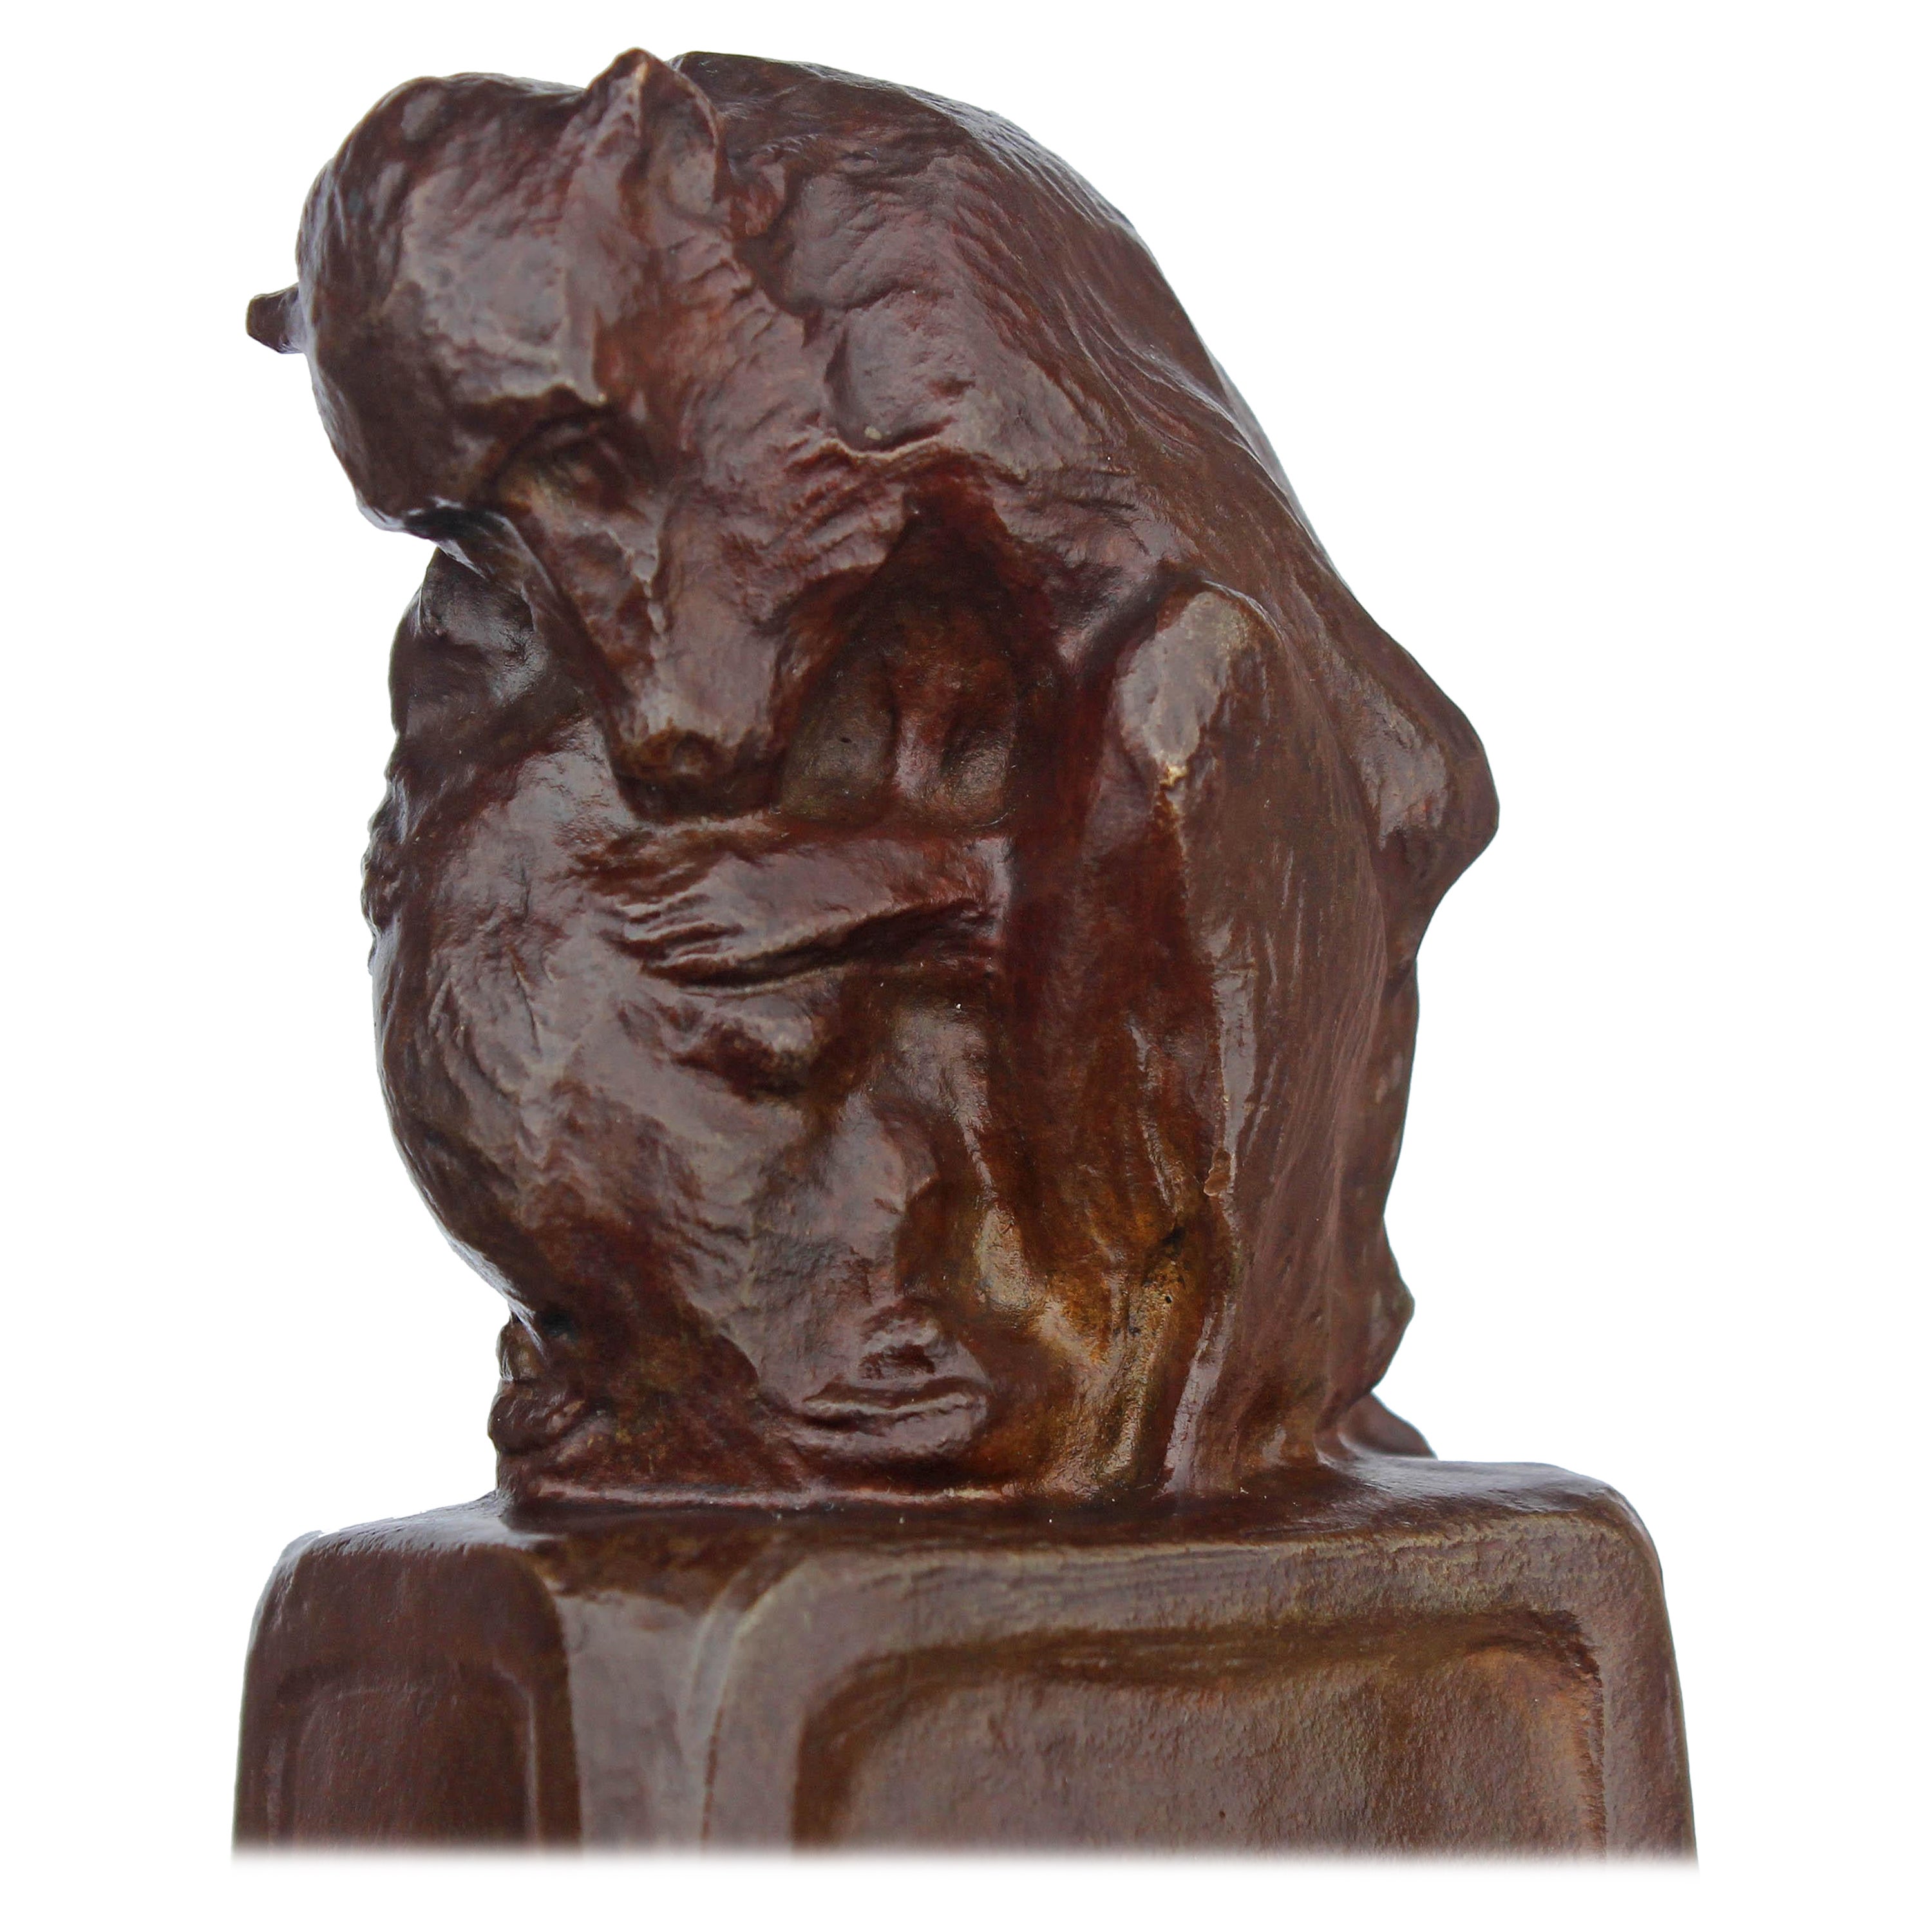 "Mère et enfant", sculpture impressionniste en bronze représentant des babouins, réalisée par la sculptrice Blanca Will, américaine, 1881-1978, datée de 1912. Les œuvres de Will sont rares.
Blanca Will a exposé à la National Academy of Design, à la